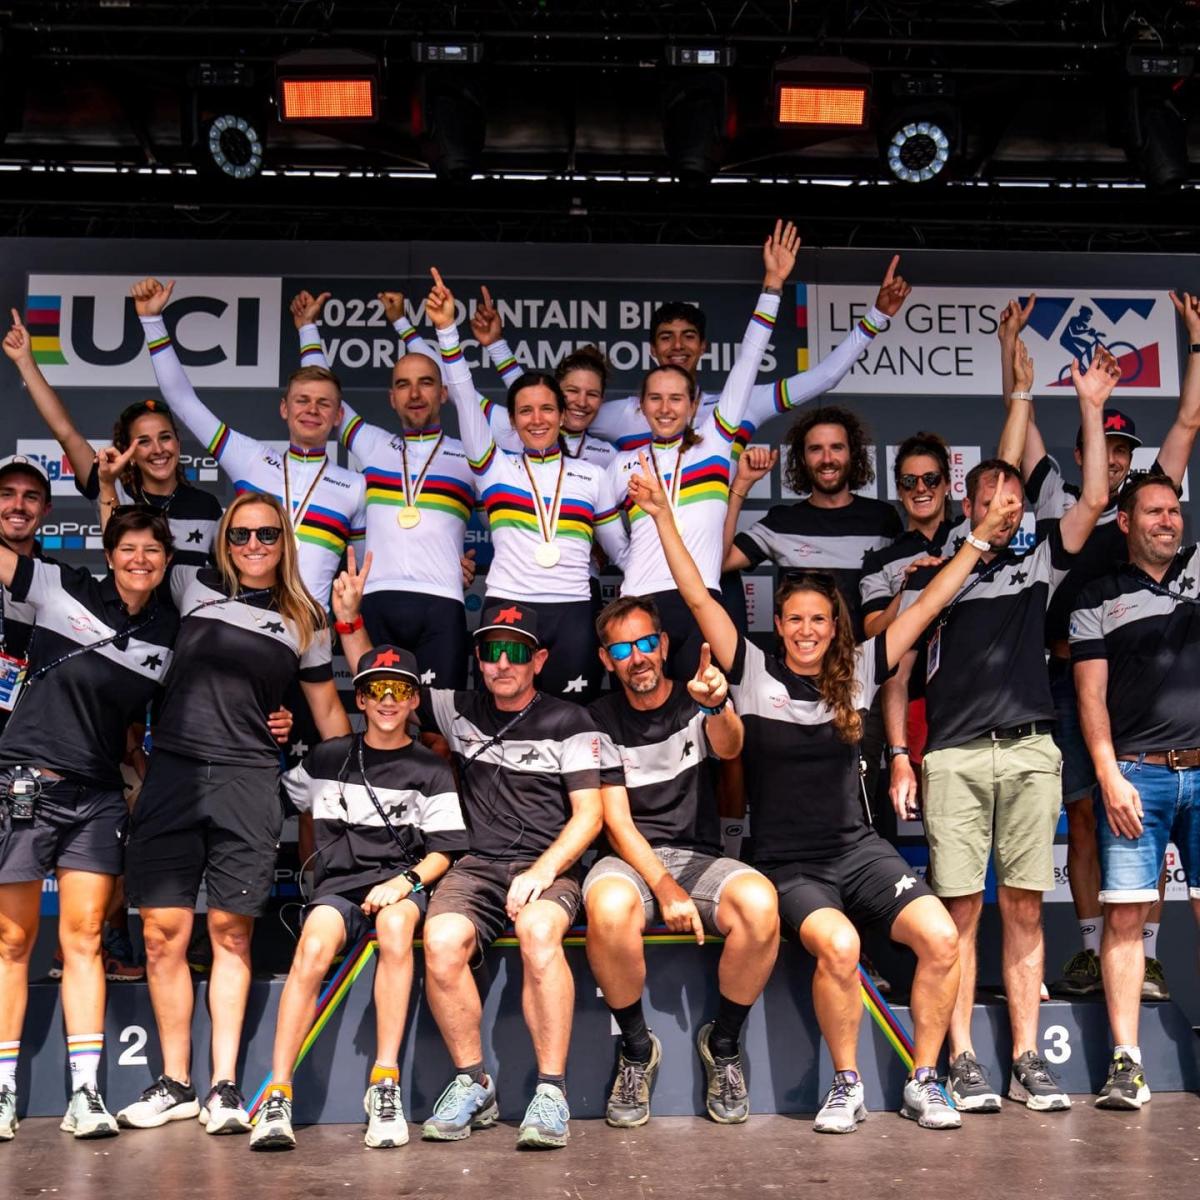 La selección suiza se adjudicó la victoria en la prueba de relevos por equipos del campeonato del mundo de bicicleta de montaña de Les Gets (Francia). España acabó en una decepcionante 13ª posición.